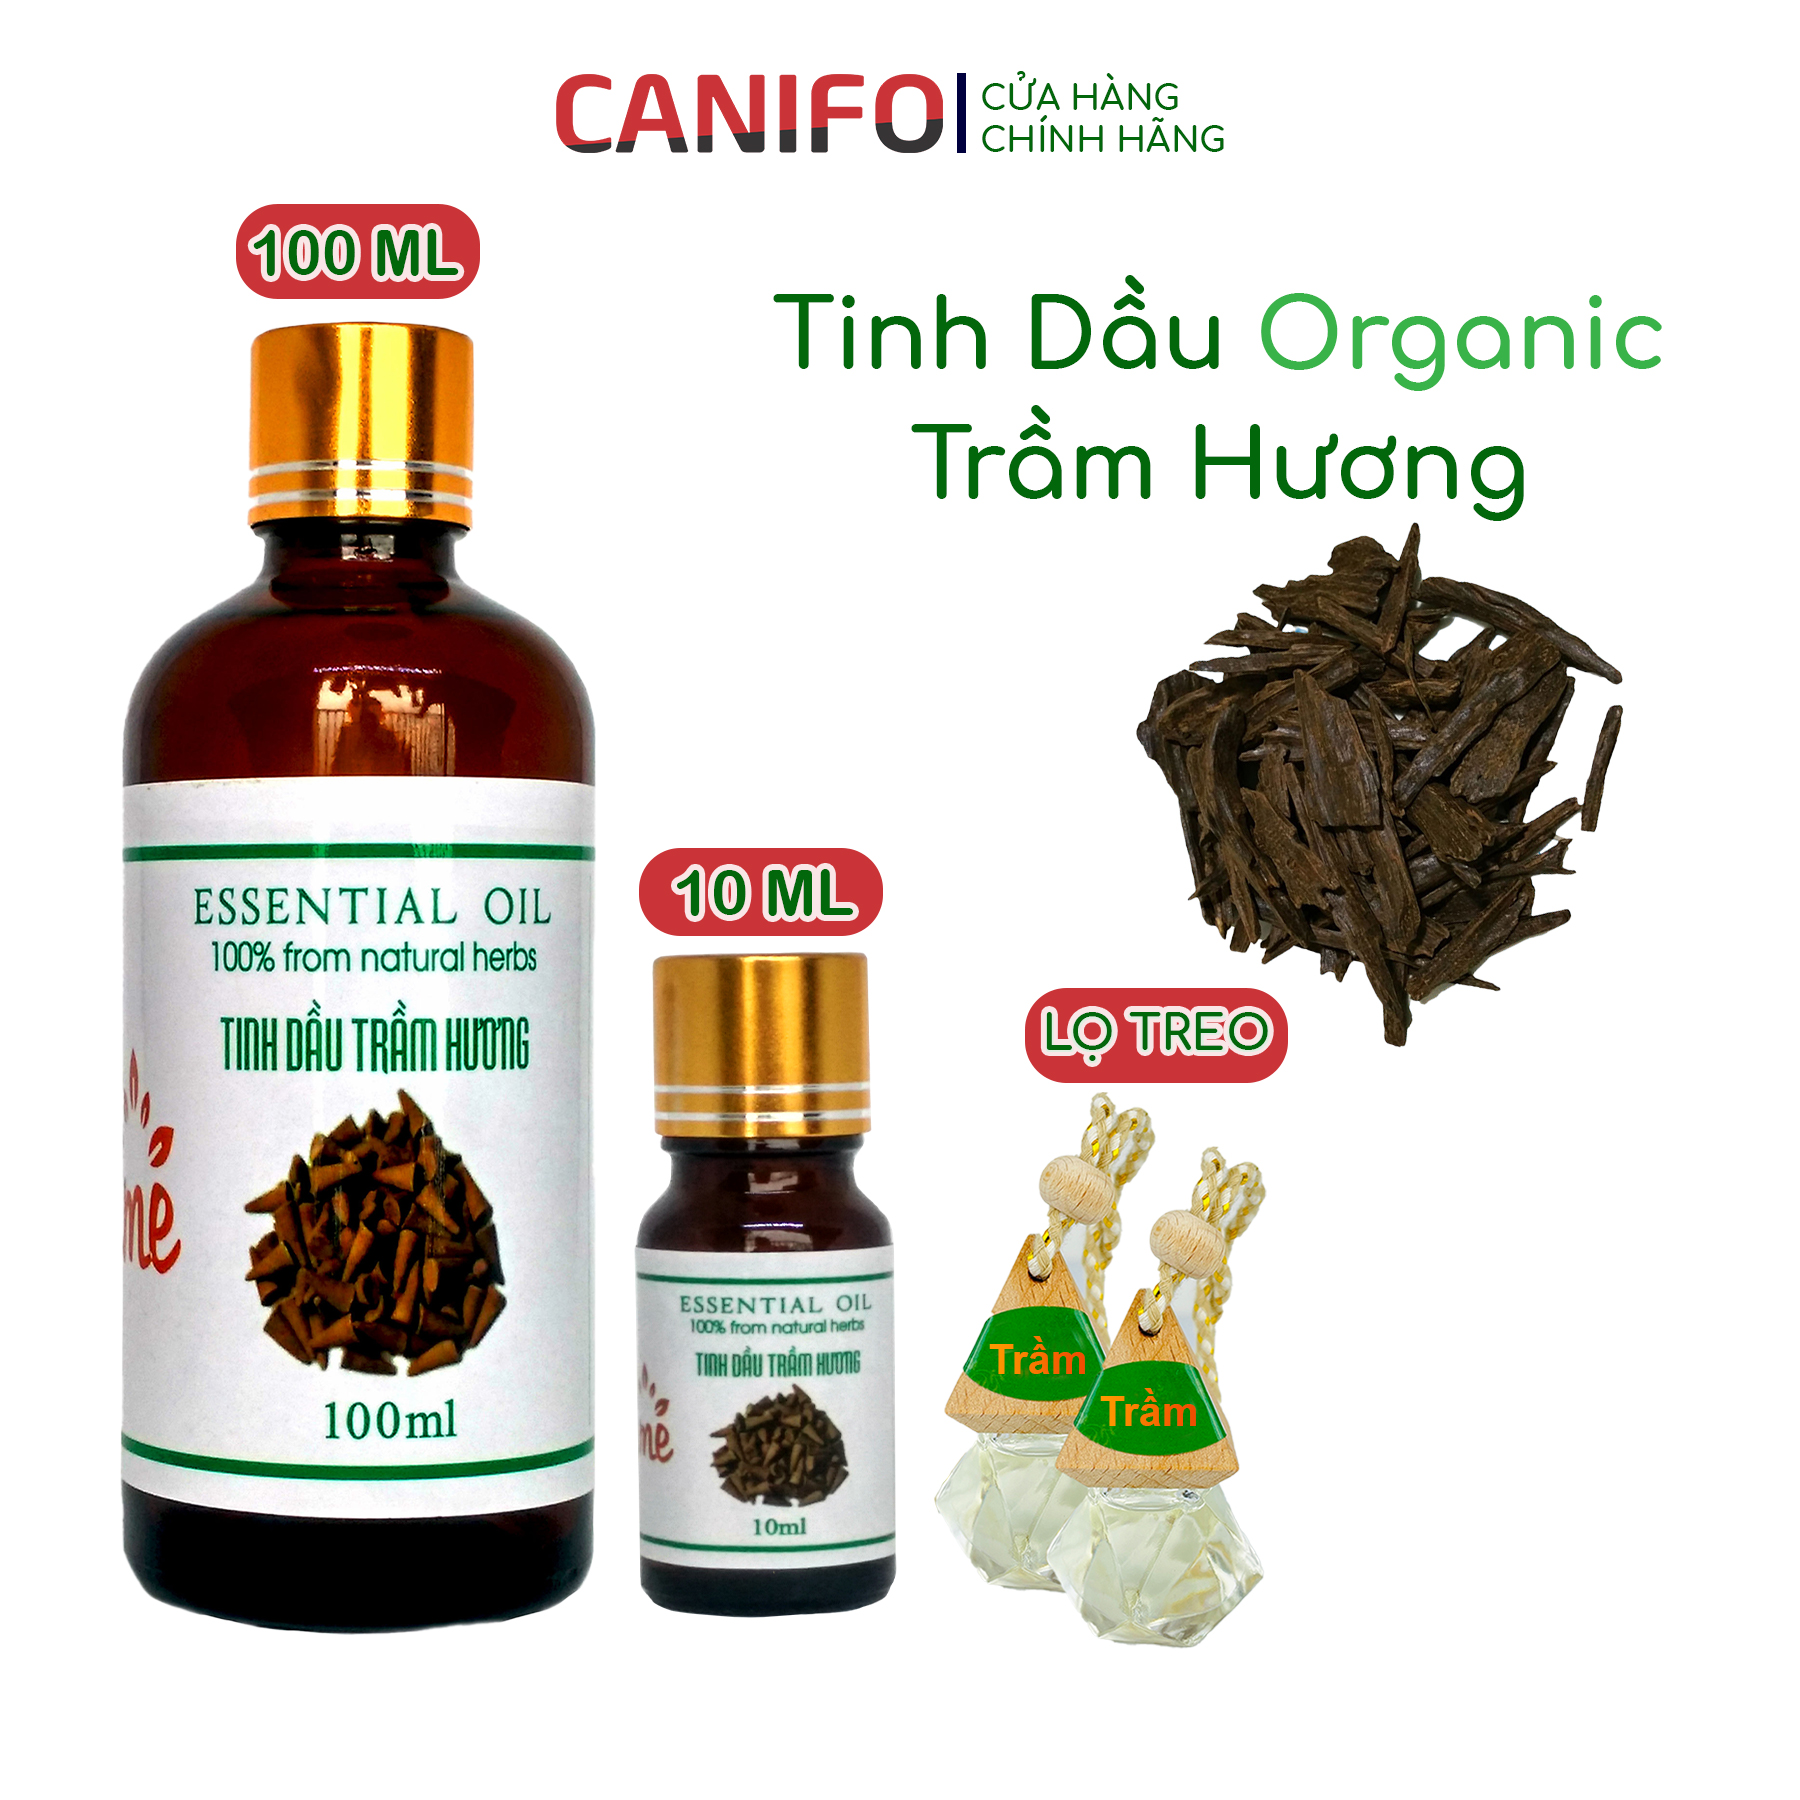 Tinh dầu trầm hương Vip - CANIFO Organic chai 100ml, 10ml và lọ treo xe